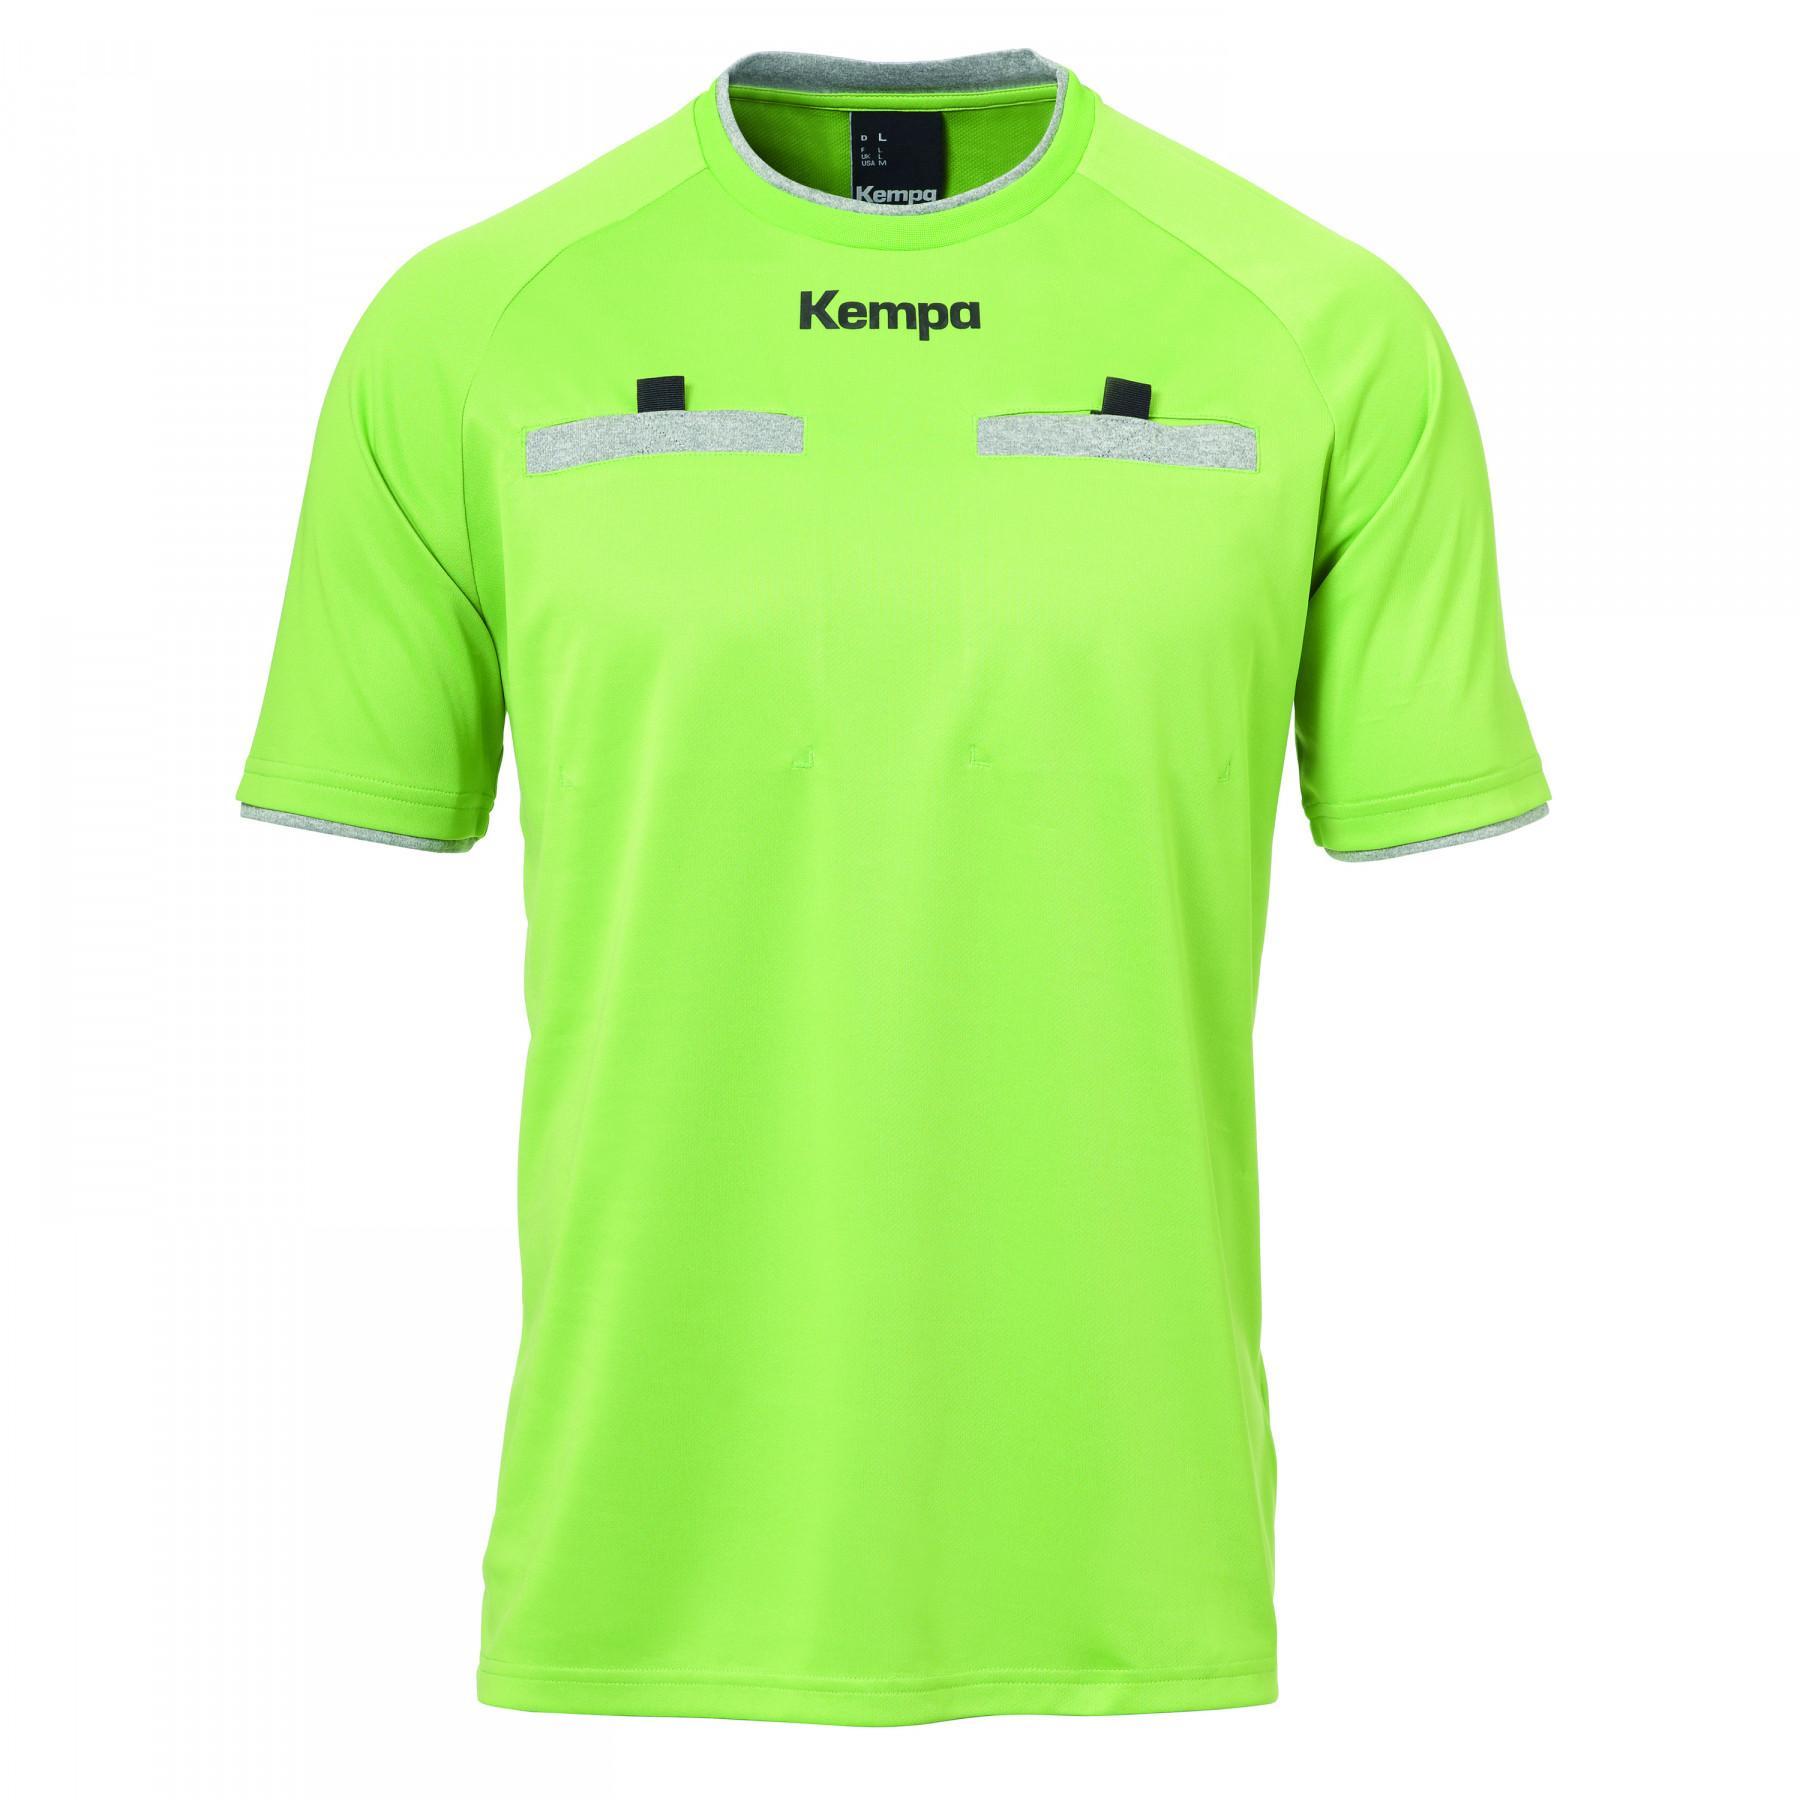 Referee's jersey Kempa